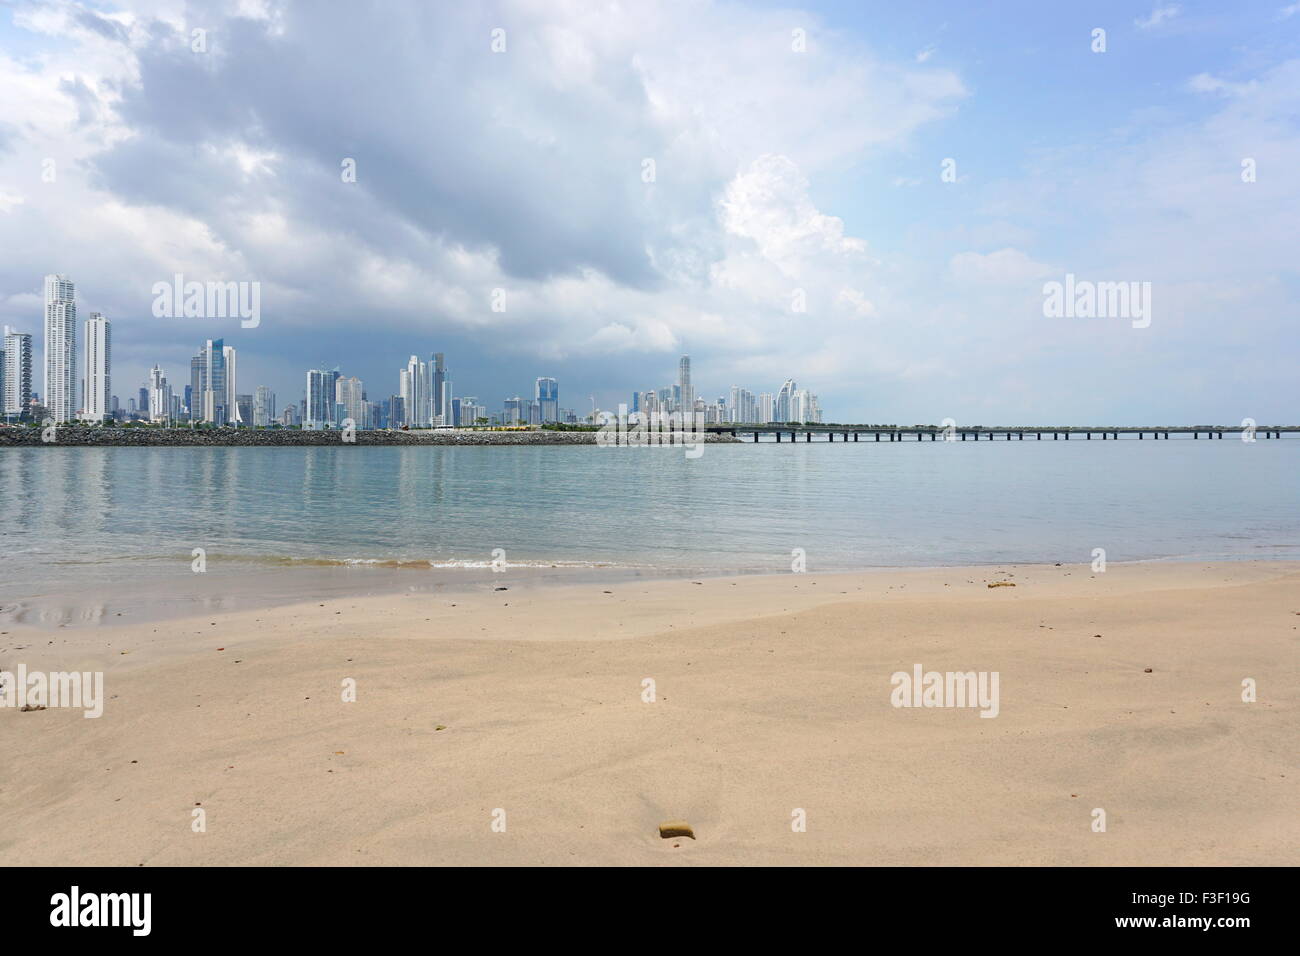 Spiaggia di sabbia con la nuova autostrada sulla baia ed i grattacieli di Panama city in background, Panama America Centrale Foto Stock